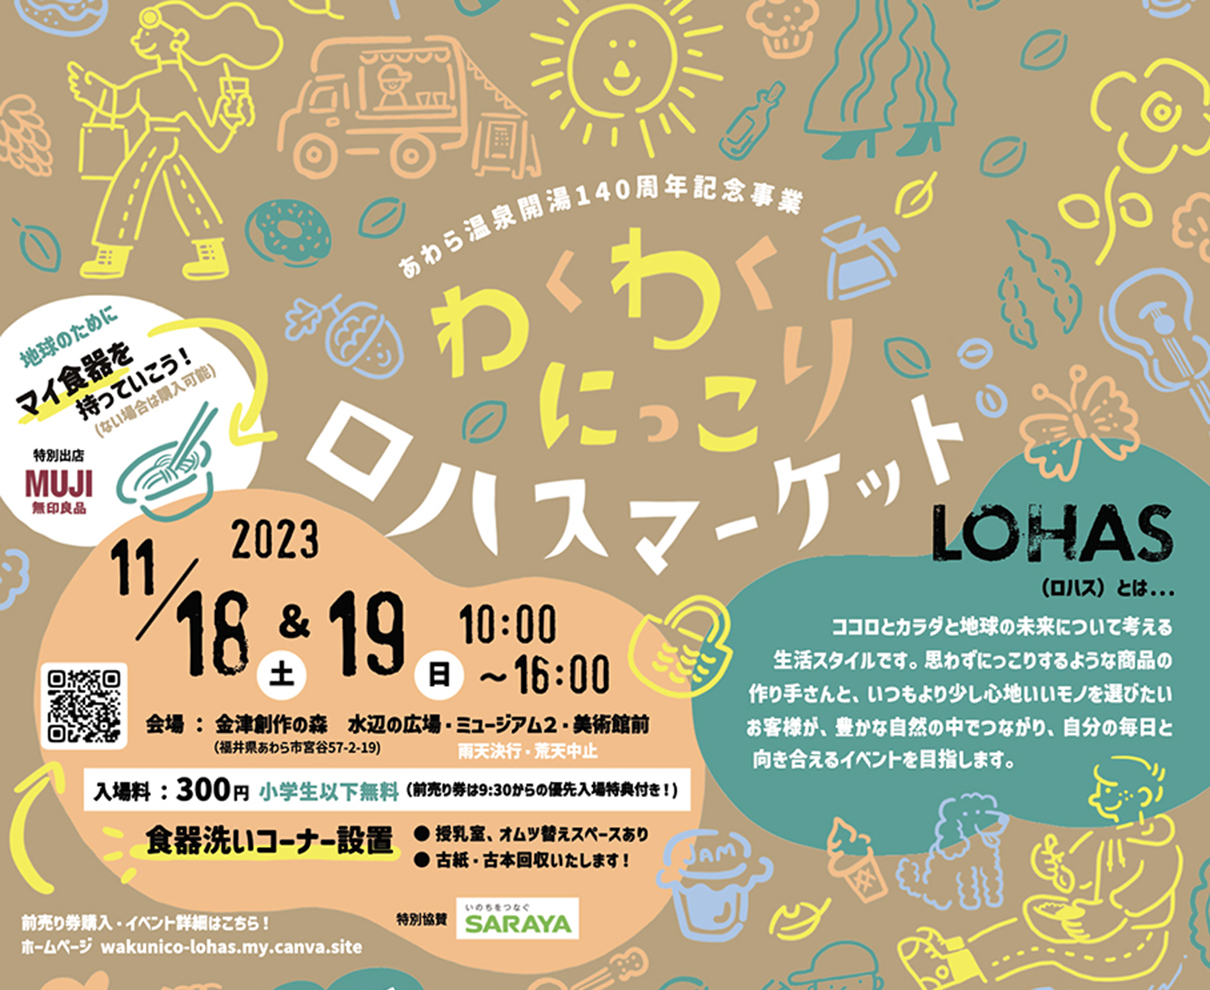 【11/18・19】福井県初の「ロハス」をテーマにした大型マルシェイベント！『わくわくにっこりロハスマーケット』